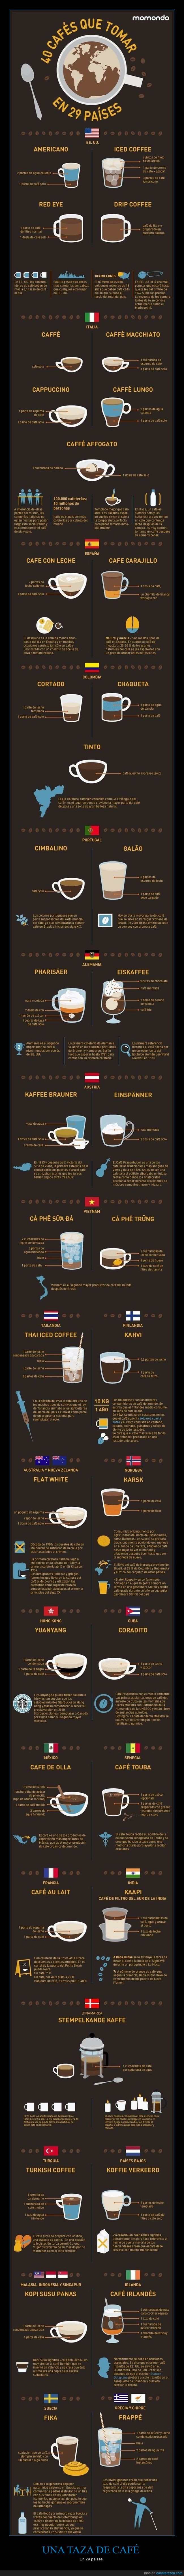 café,países,infografía